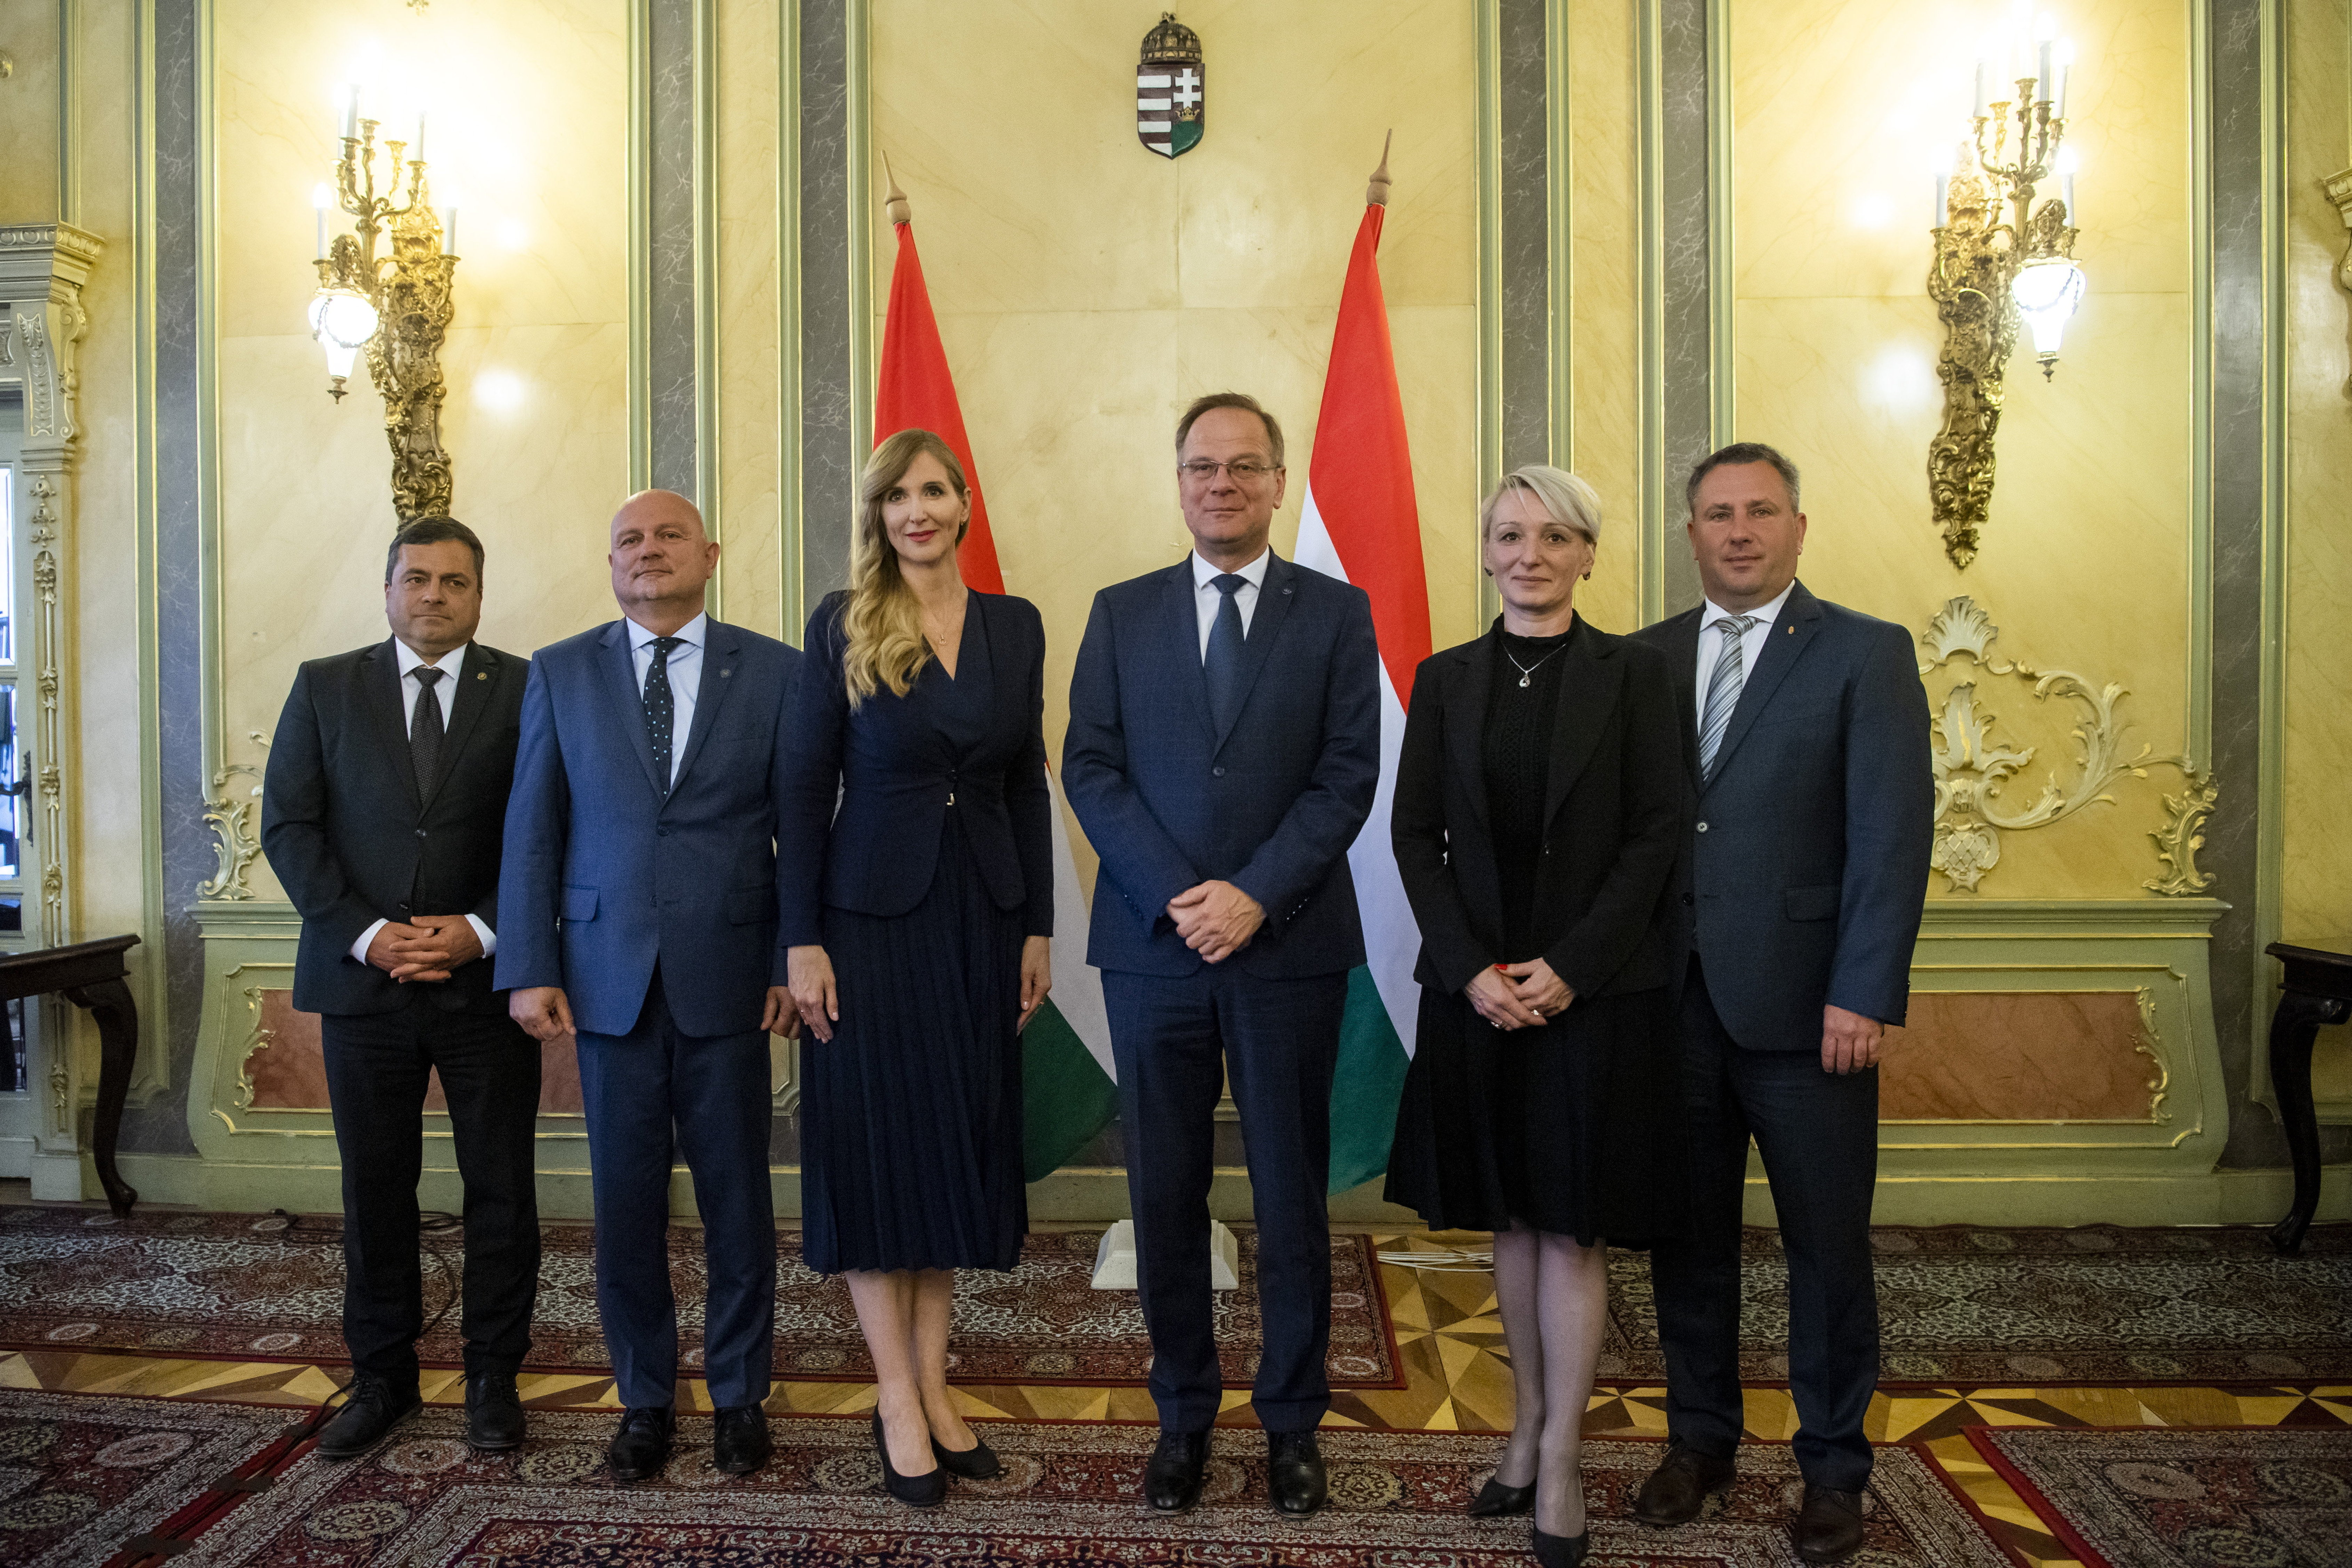 Közép-Magyarország is külön fejlesztési kormánybiztost kap